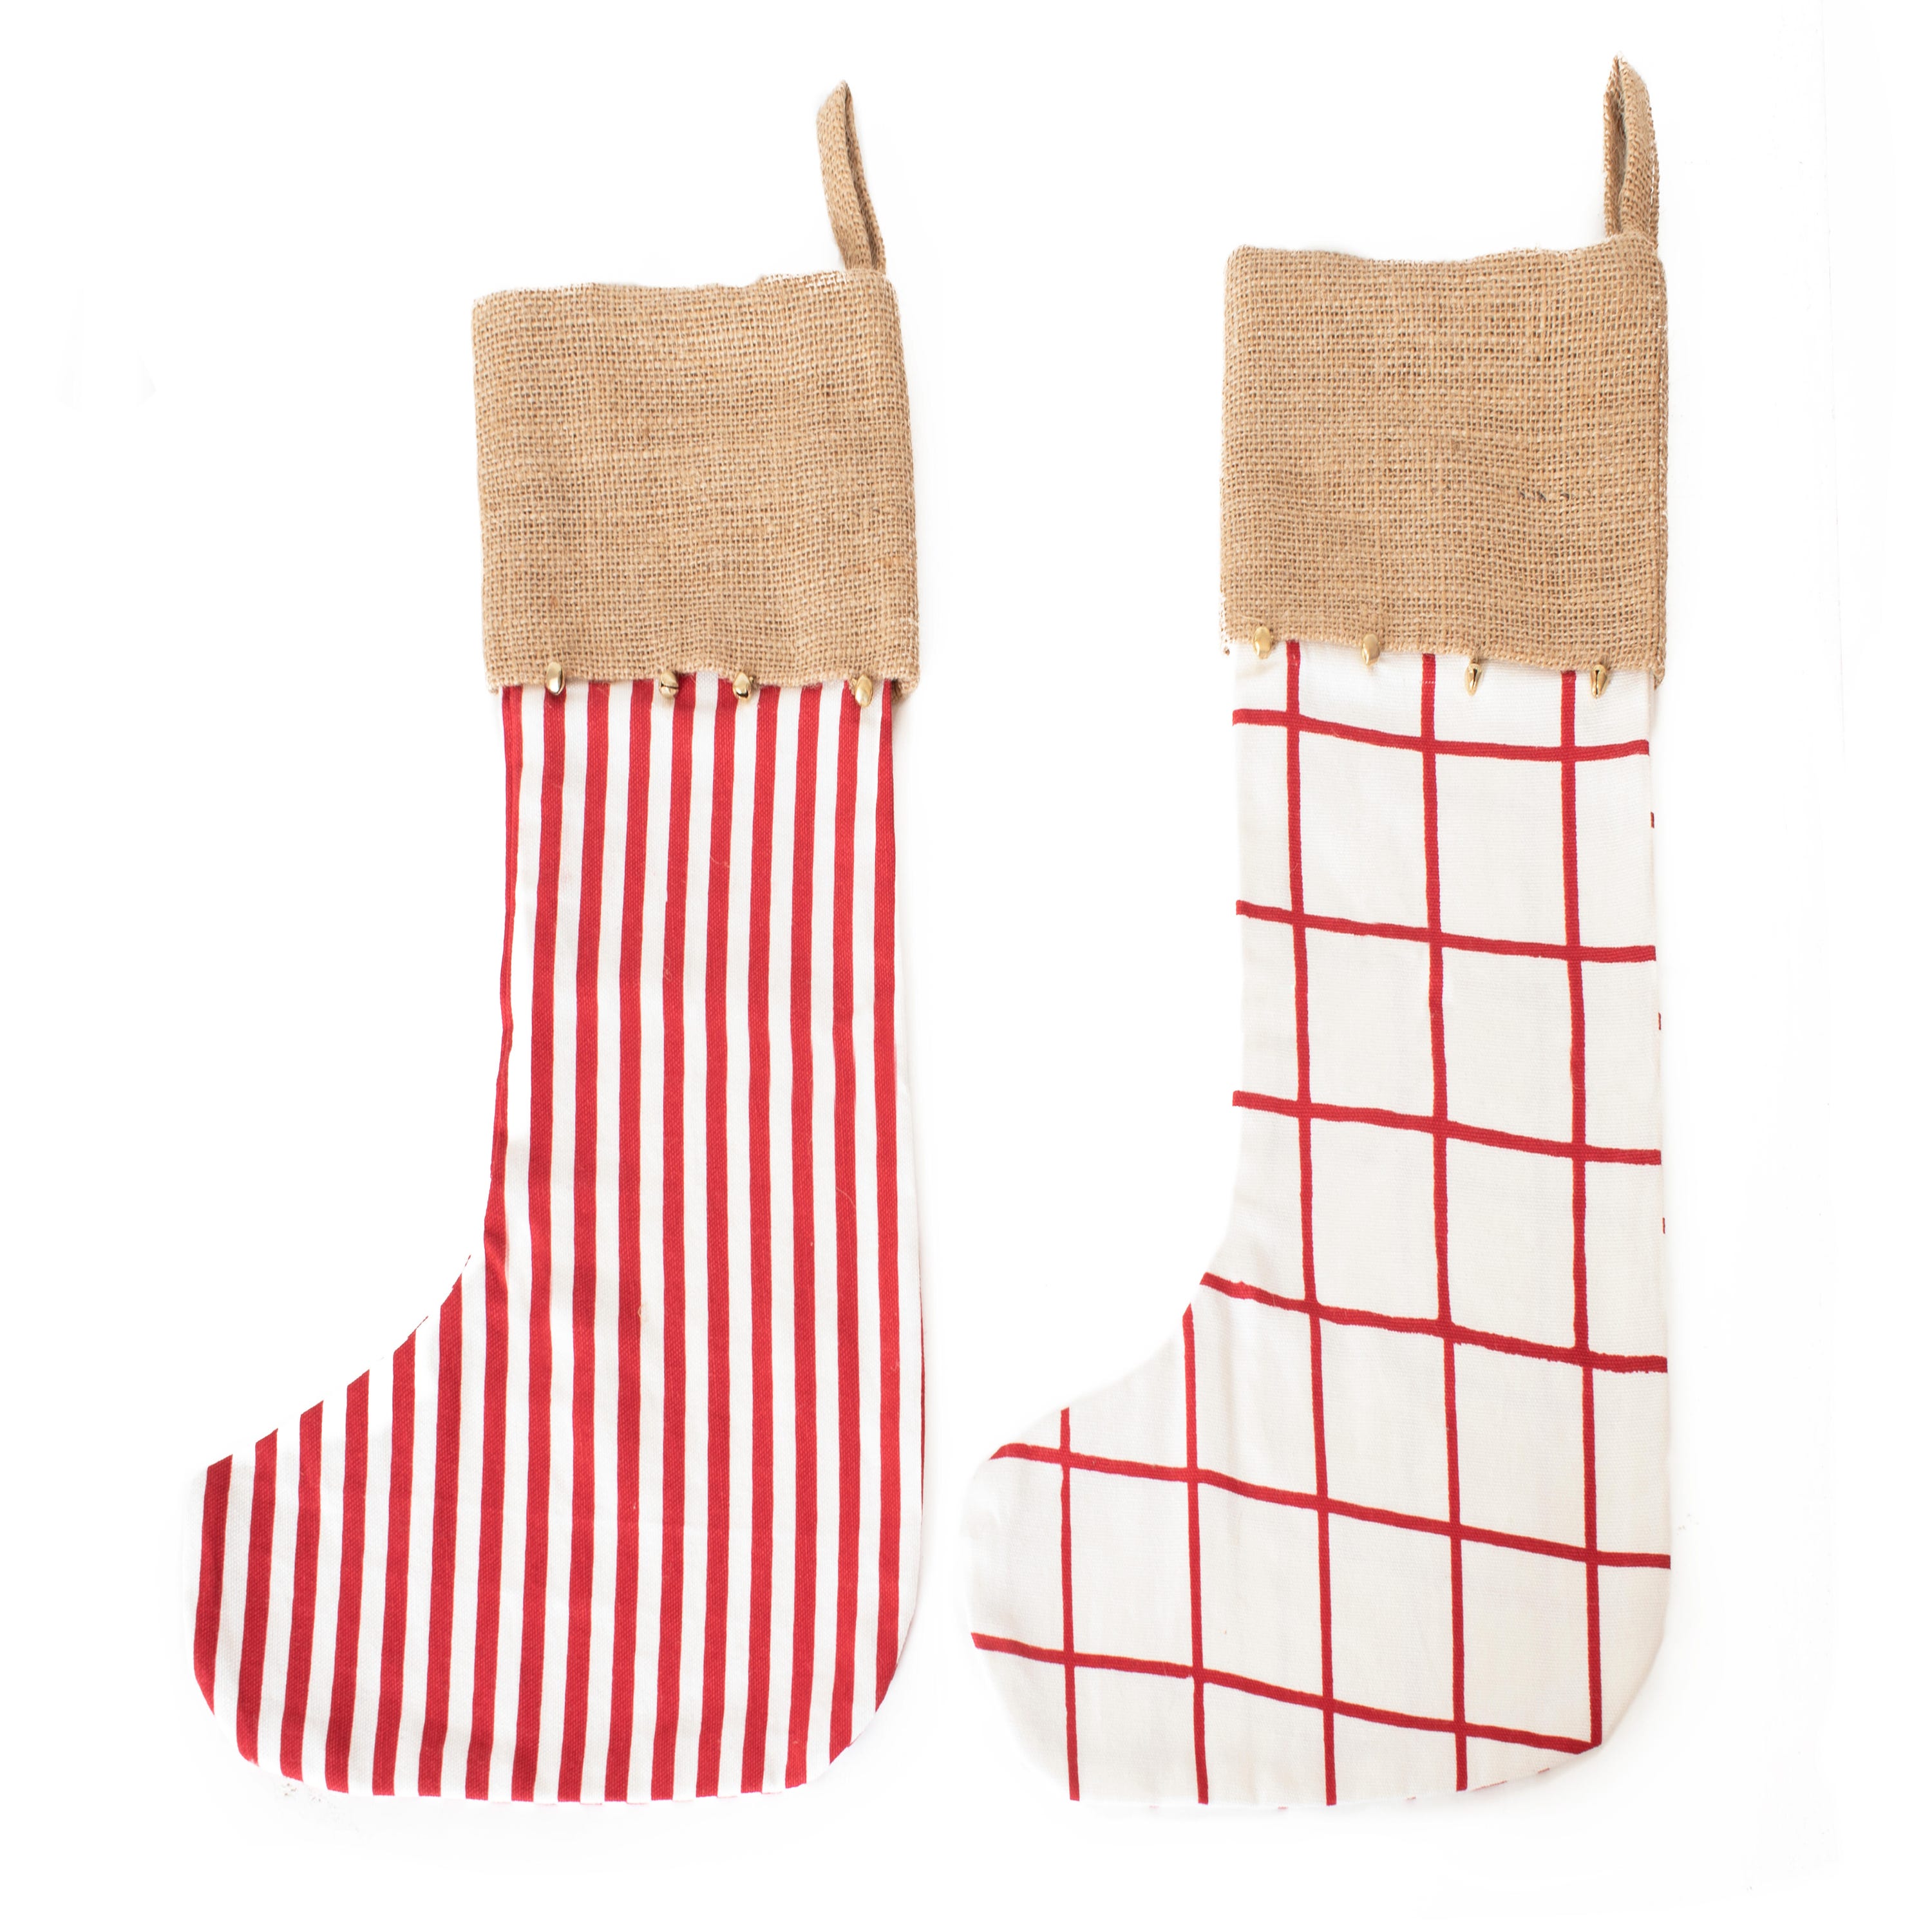 Pack 3 calcetines navideños Papa Noel, Reno y Muñeco de nieve